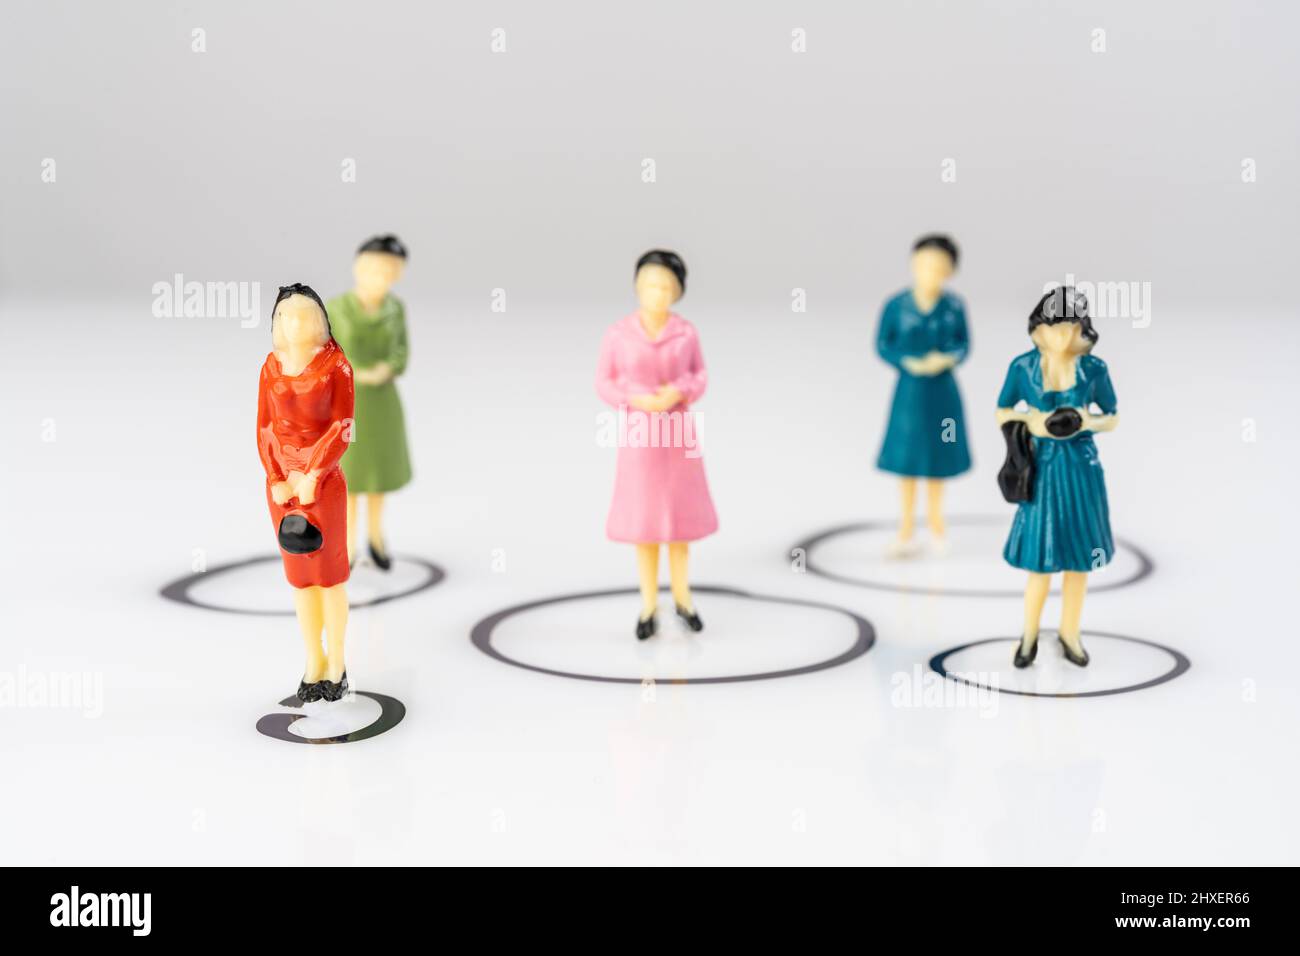 Einzelne Miniatur-weibliche Modelle isoliert in Kreisen auf einer weißen Oberfläche gezeichnet Stockfoto